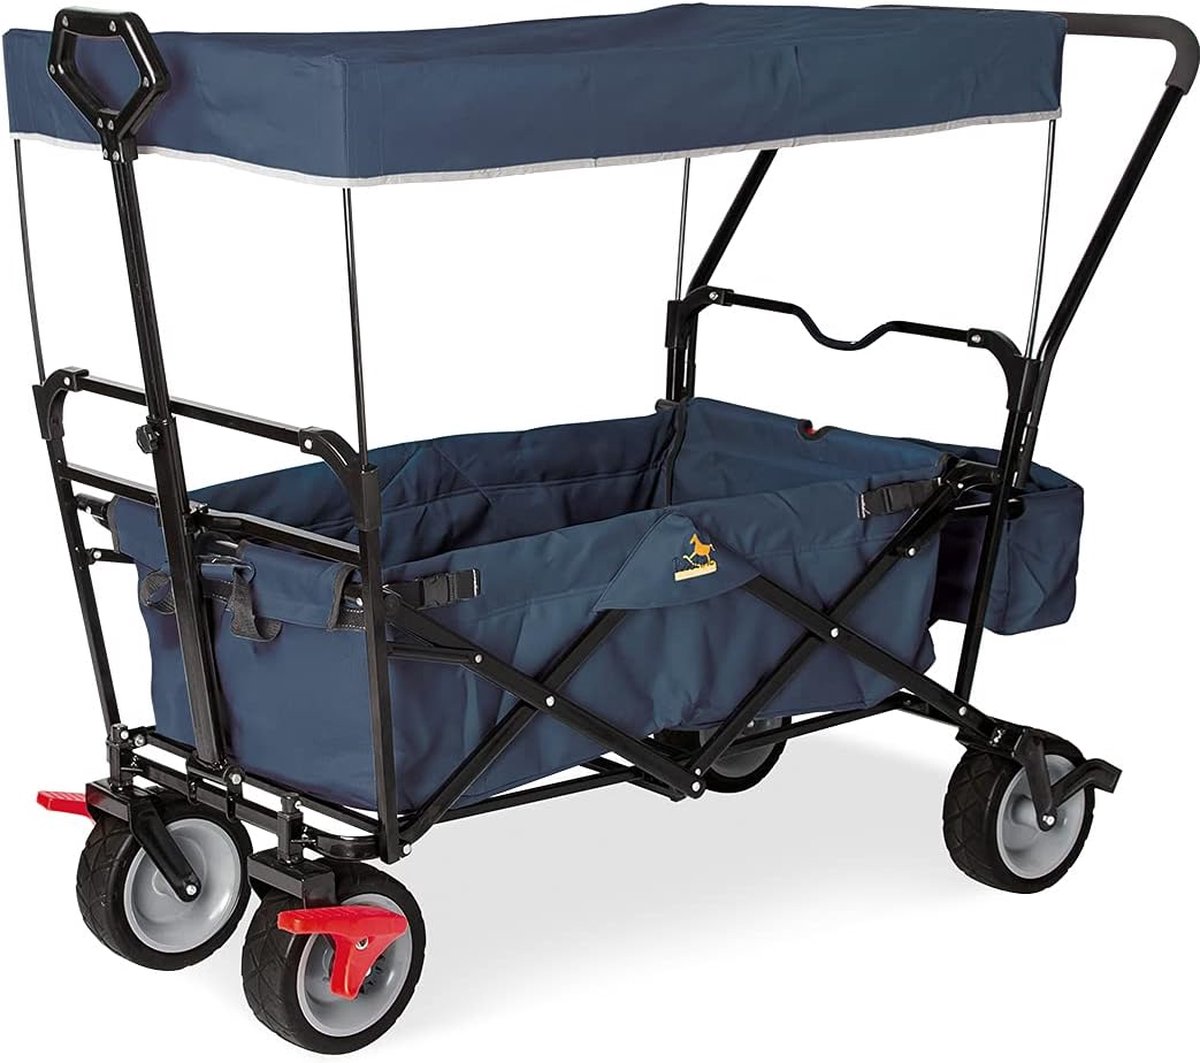 vouwwagen Paxi Dlx Comfort met rem, zonnekap, draagtas, comfortabele drukgreep, lading 70 kg, marineblauw